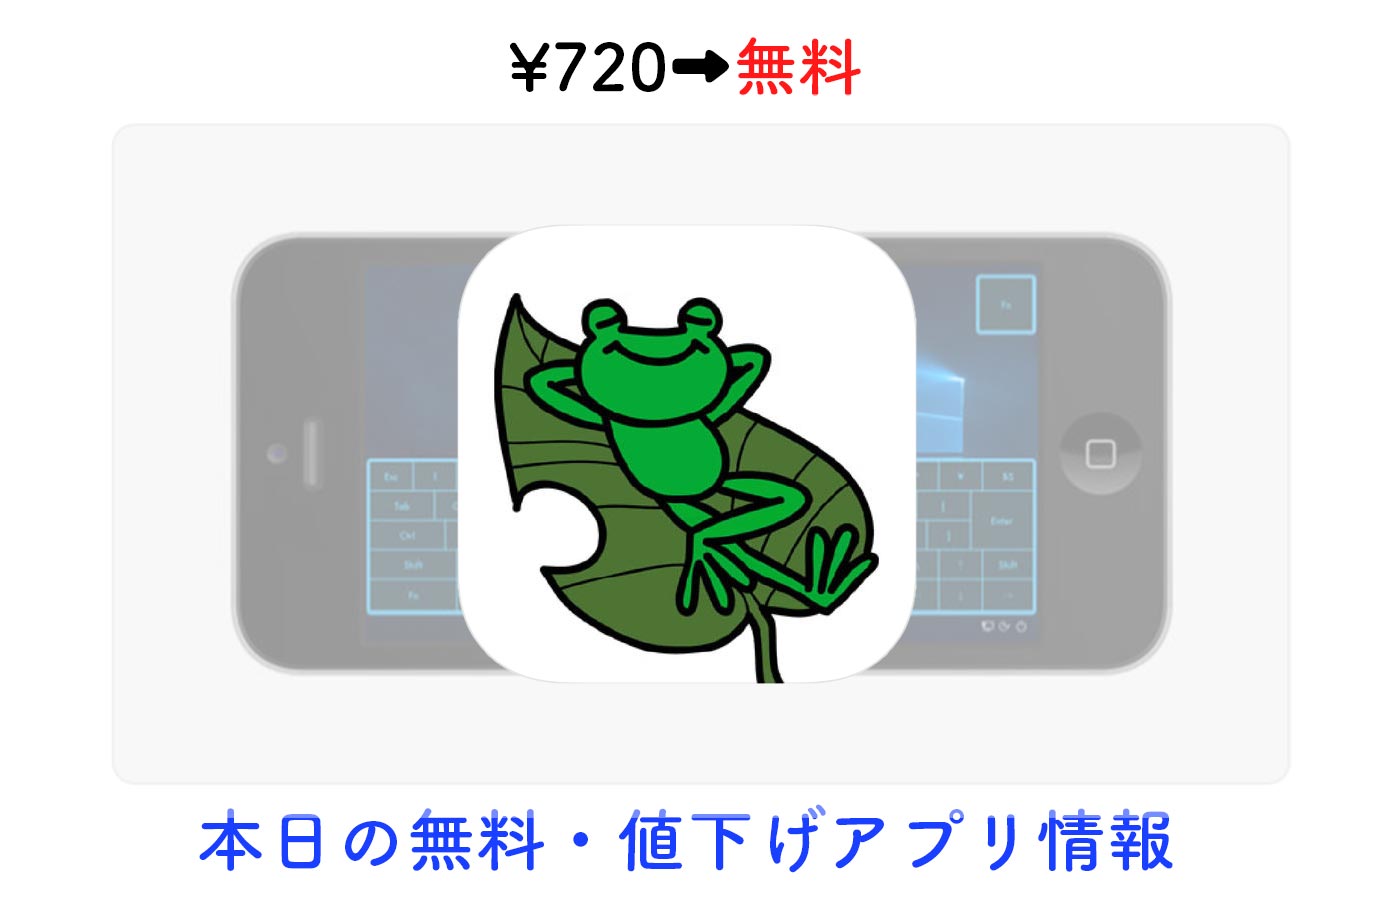 720円→無料、iPhone・iPadでPCを操作できる「KeroRemote」など【5/4】セールアプリ情報